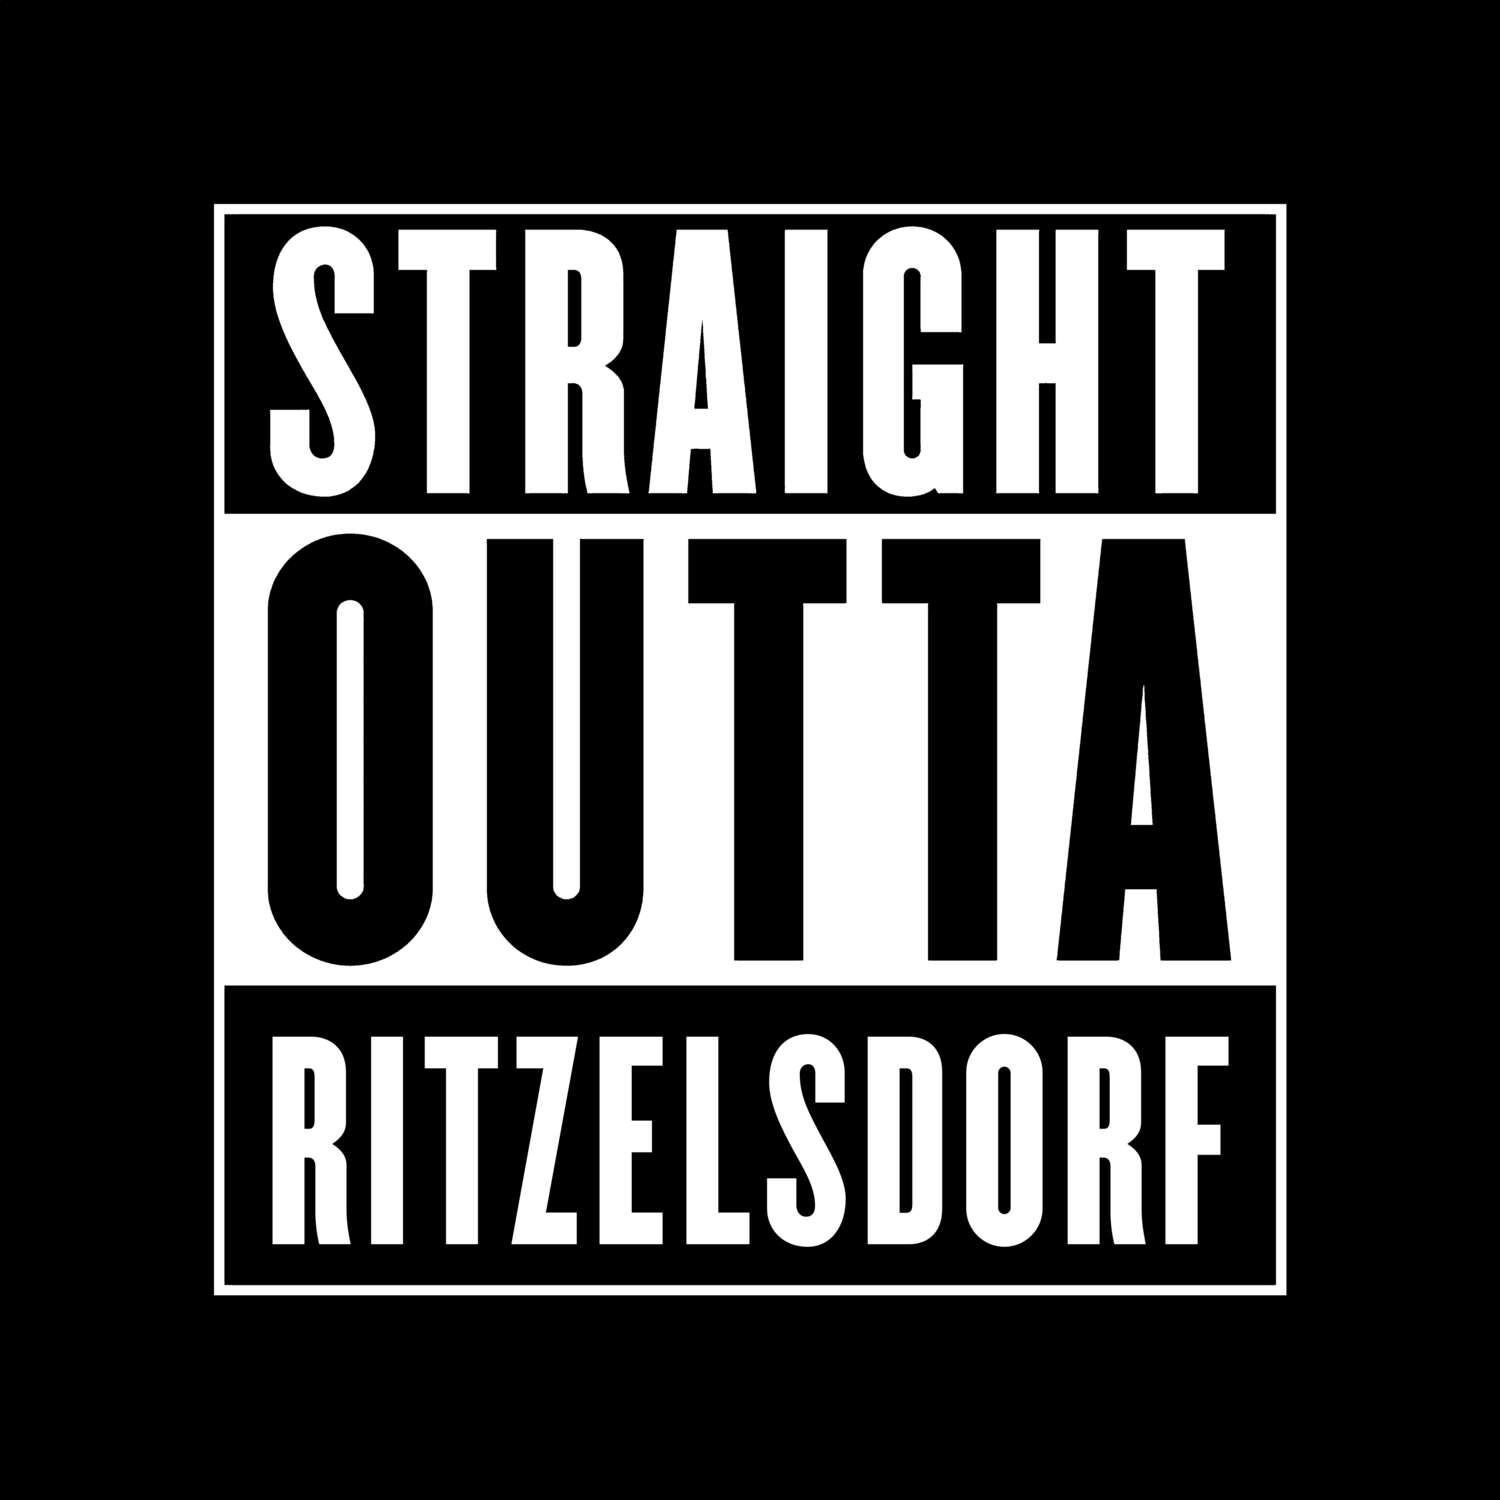 Ritzelsdorf T-Shirt »Straight Outta«